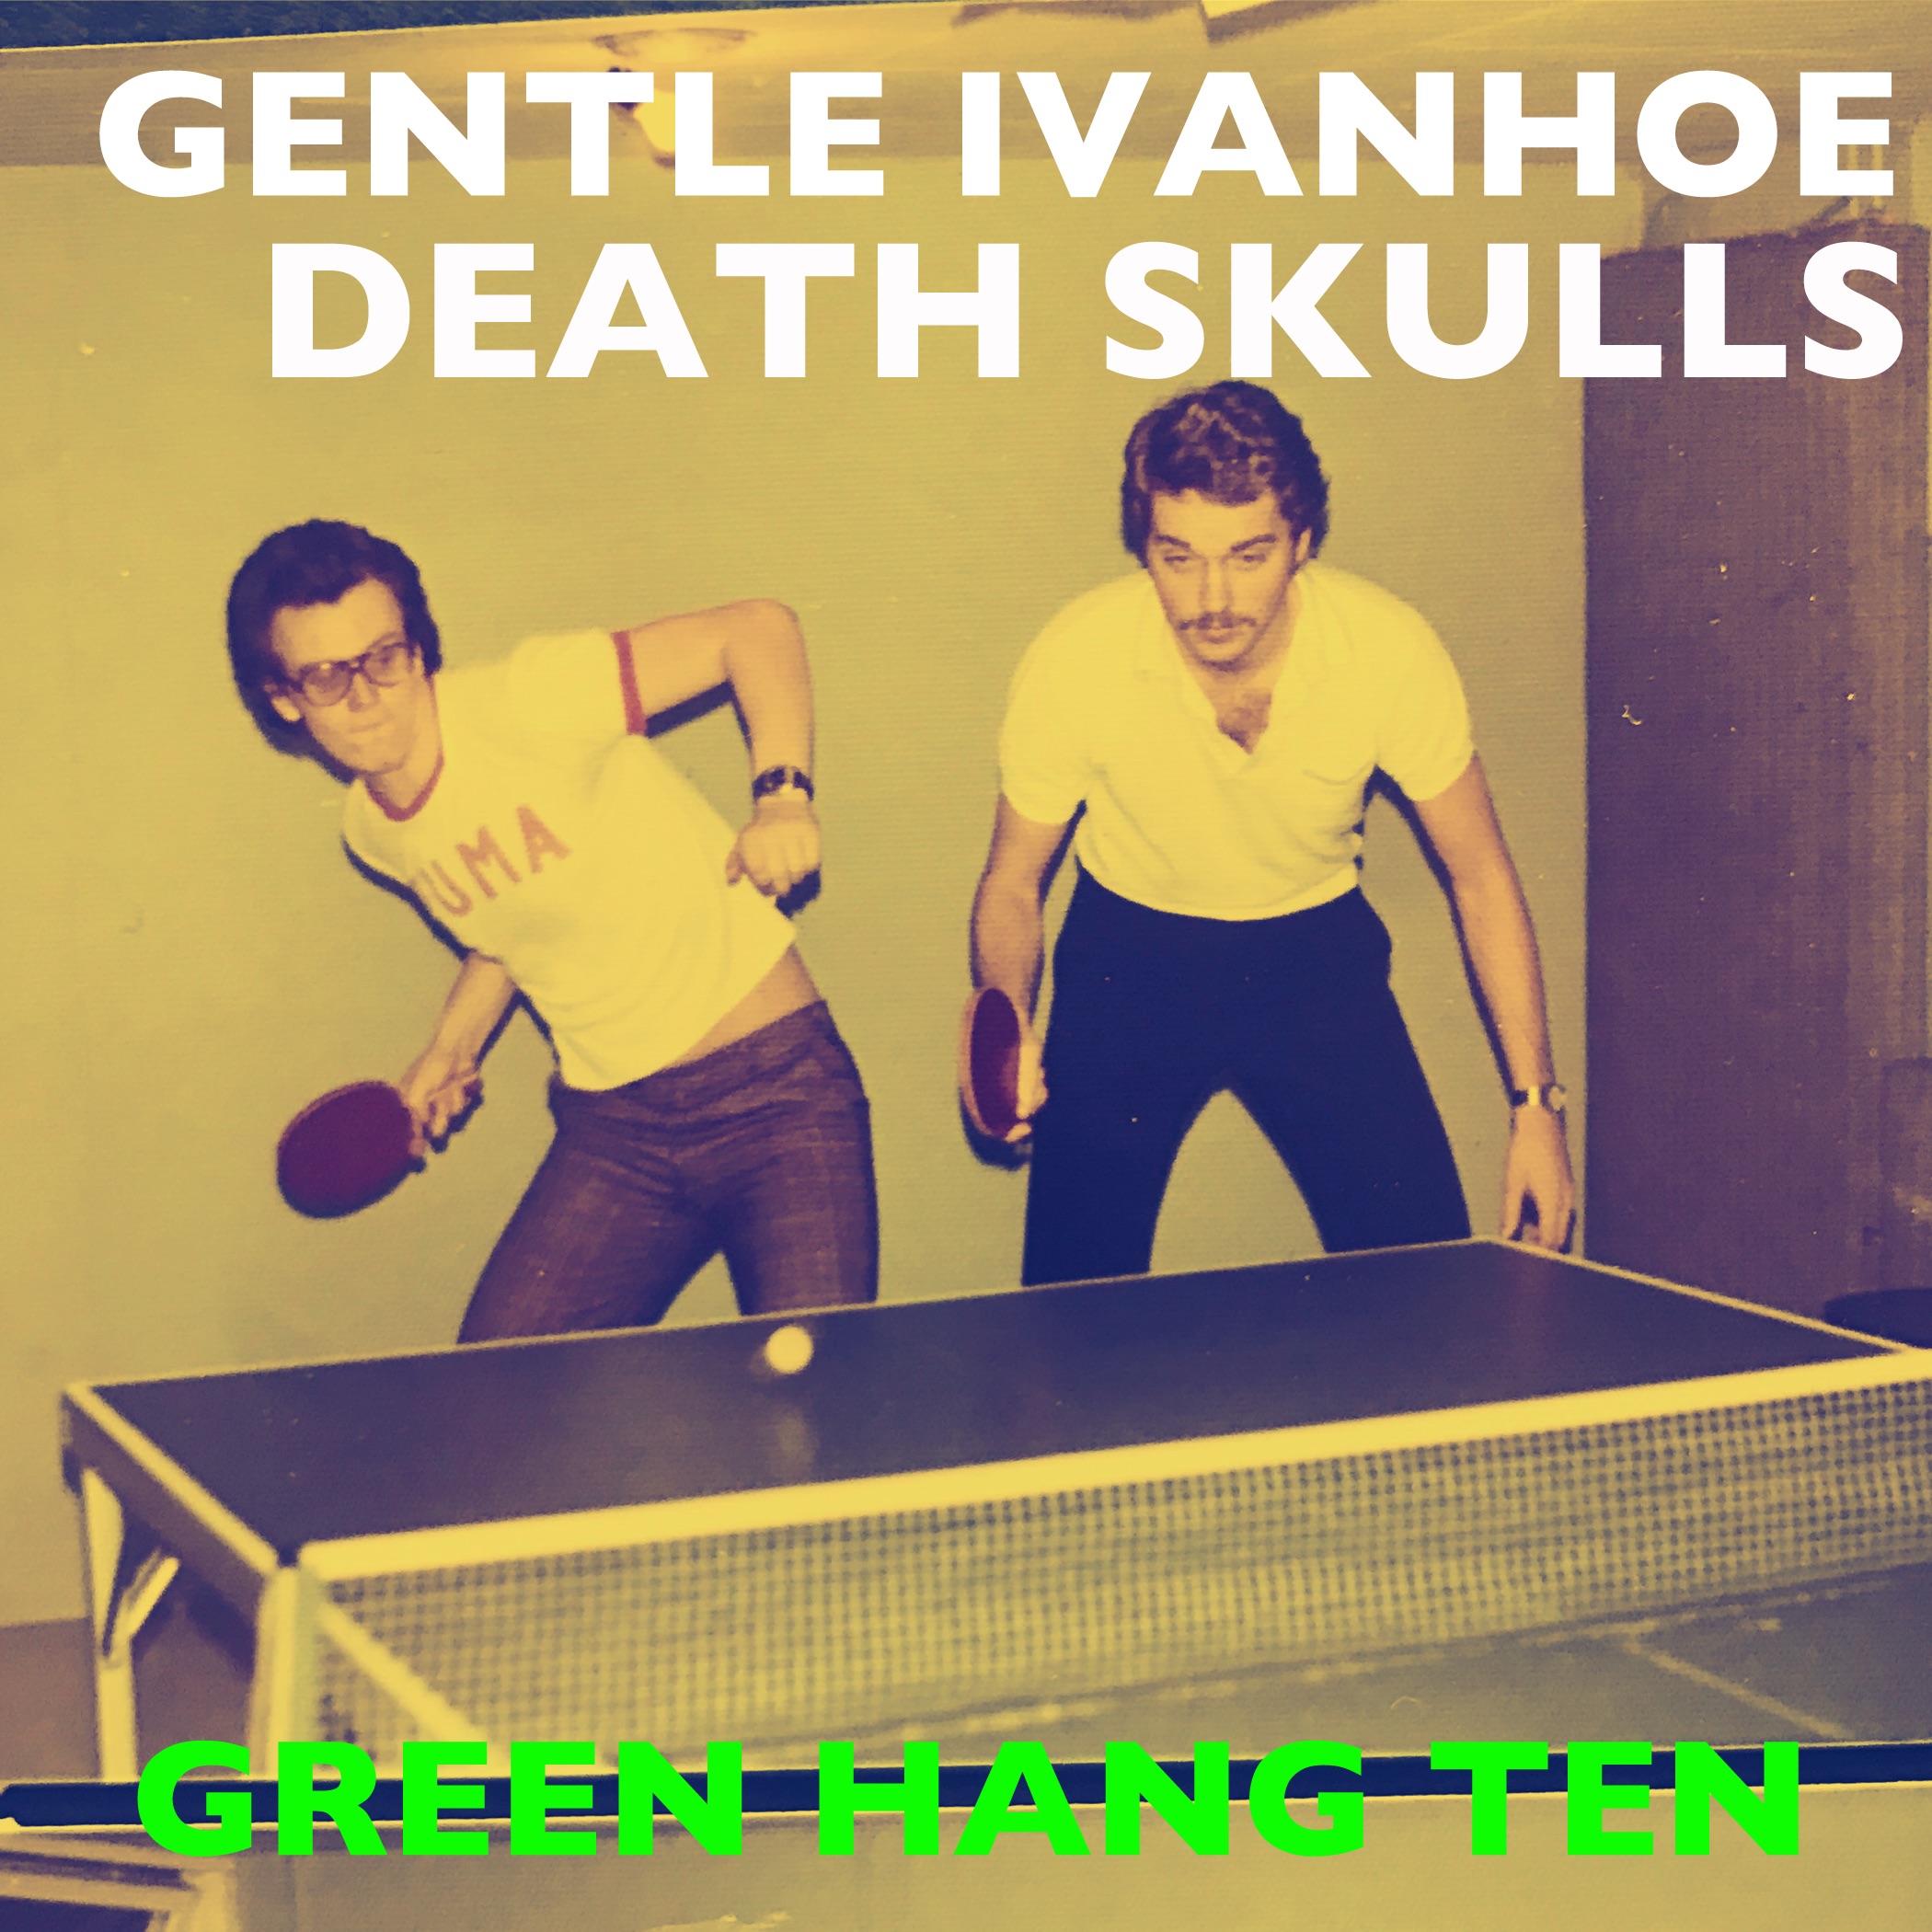 Gentle Ivanhoe Death Skulls – “Green Hang Ten”